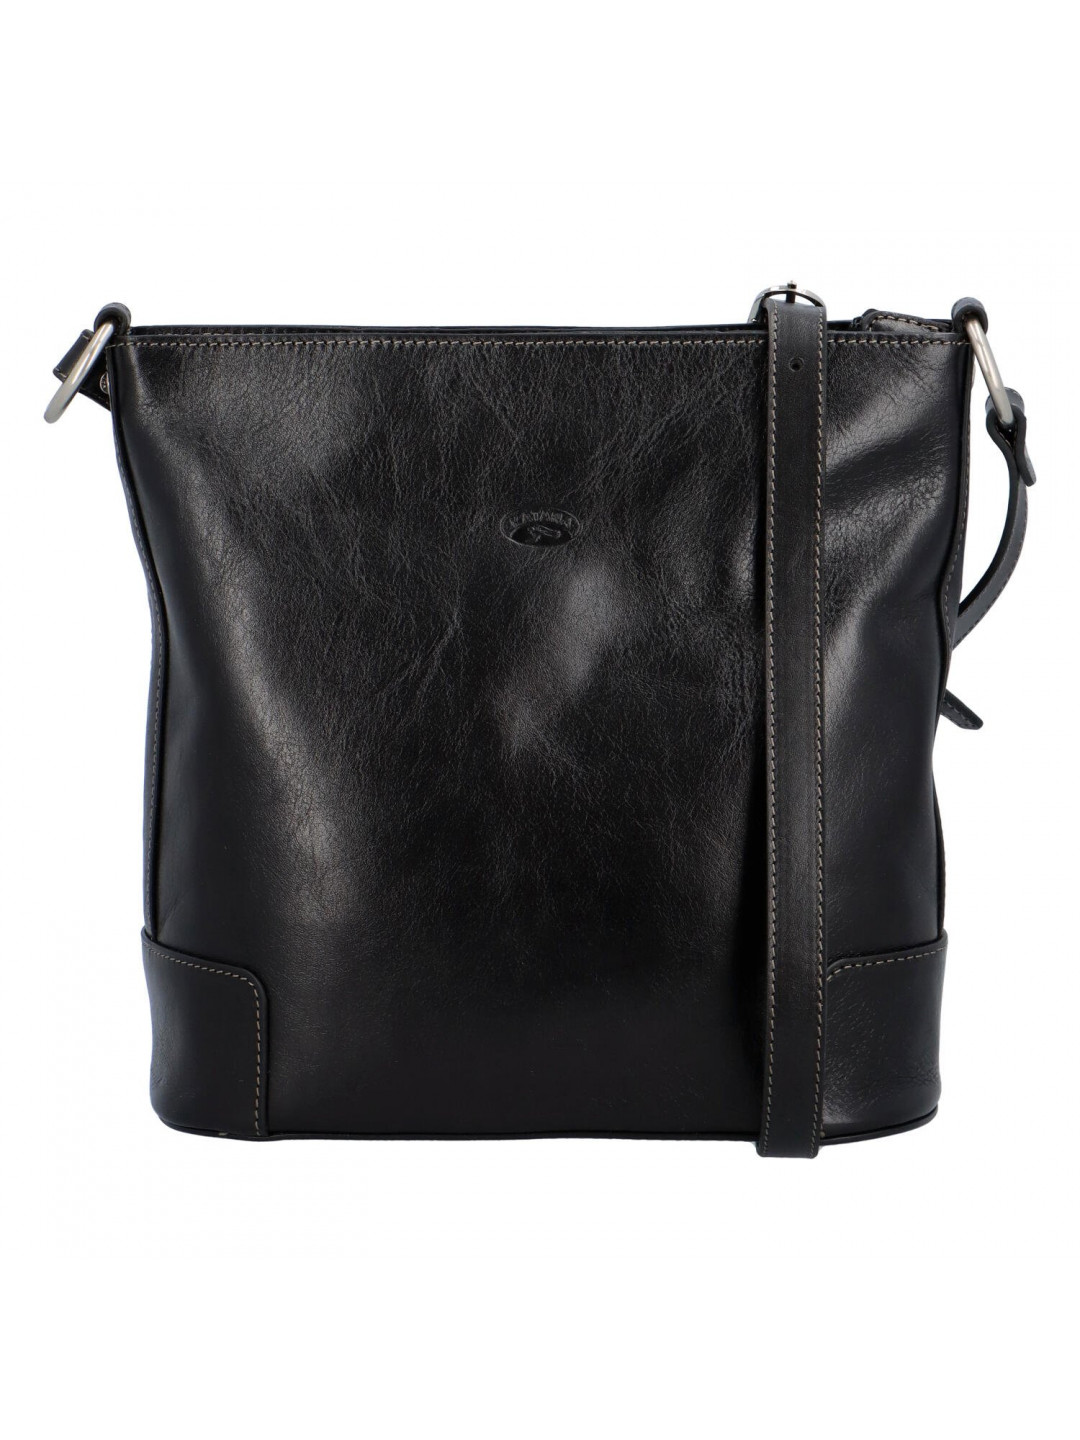 Luxusní dámská kožená kabelka Katana Monaco lady černá